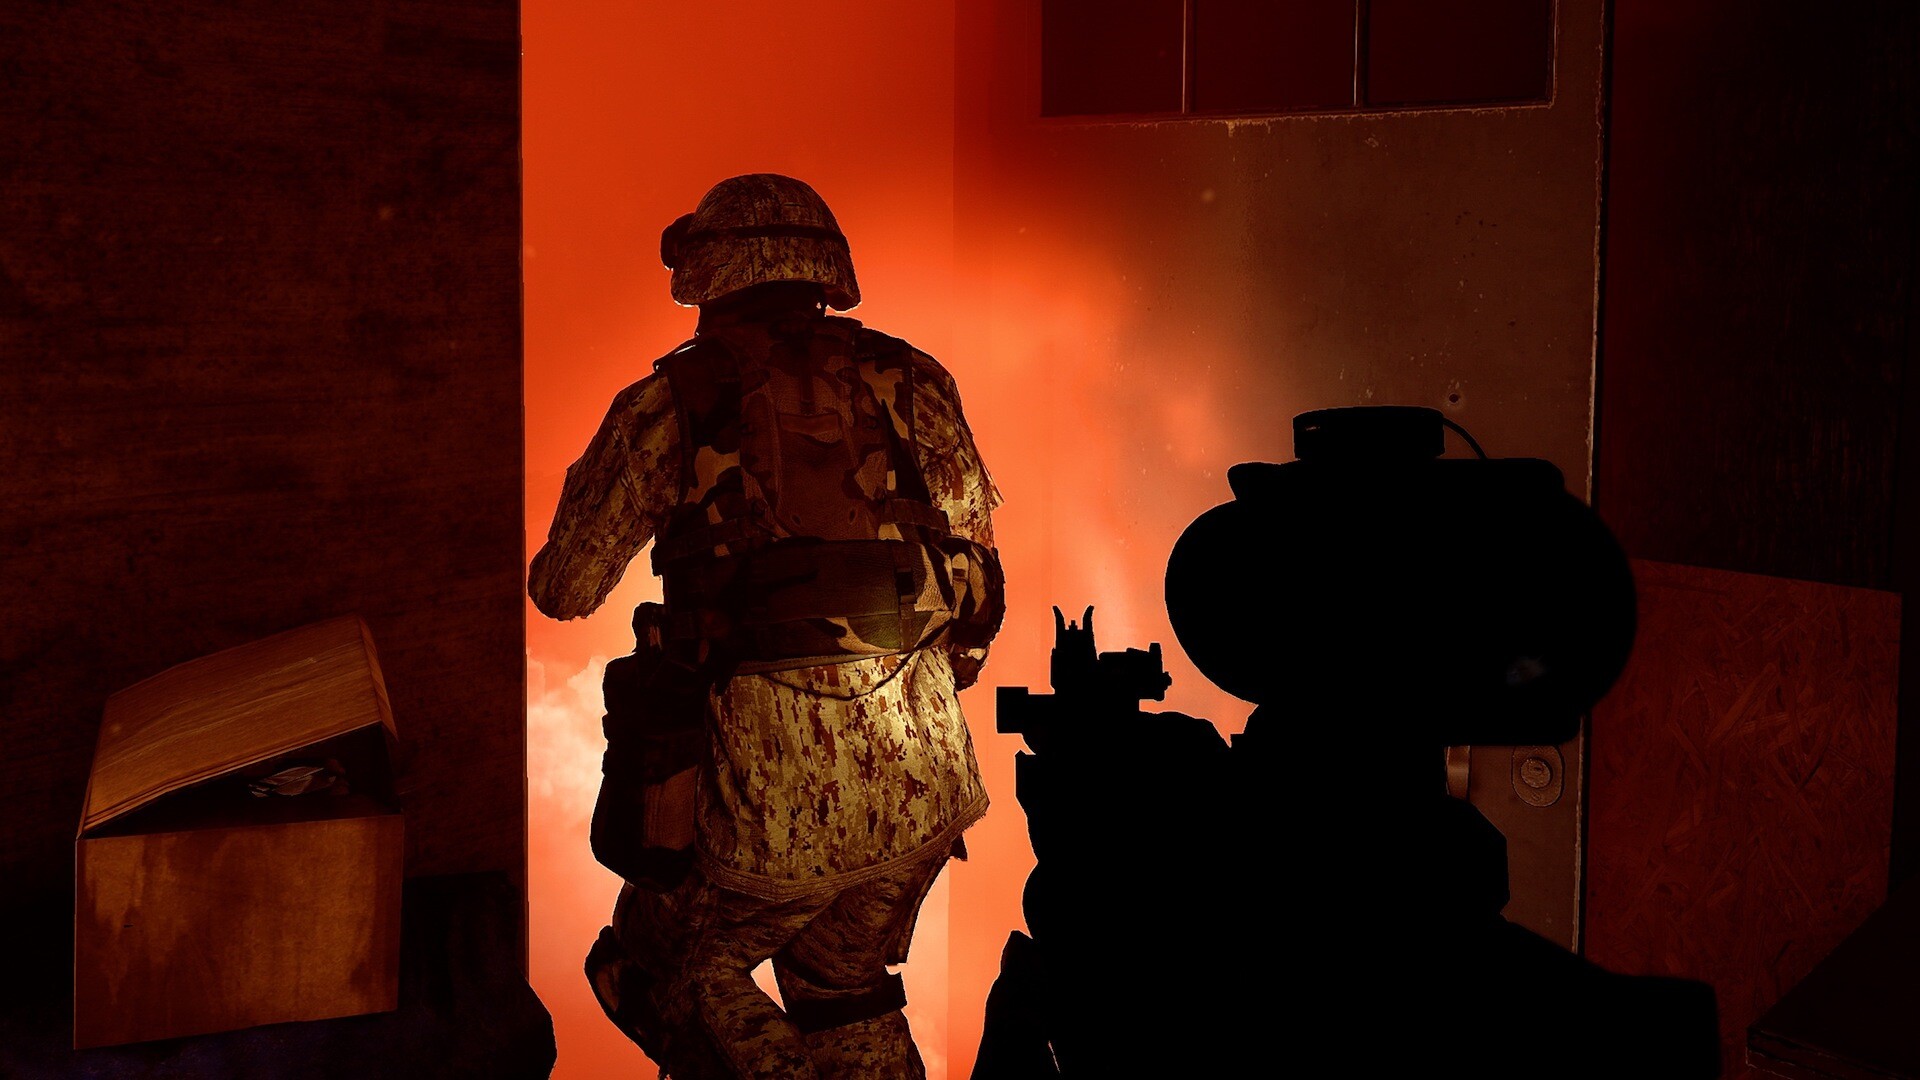 Six Days In Fallujah Steam Altergift